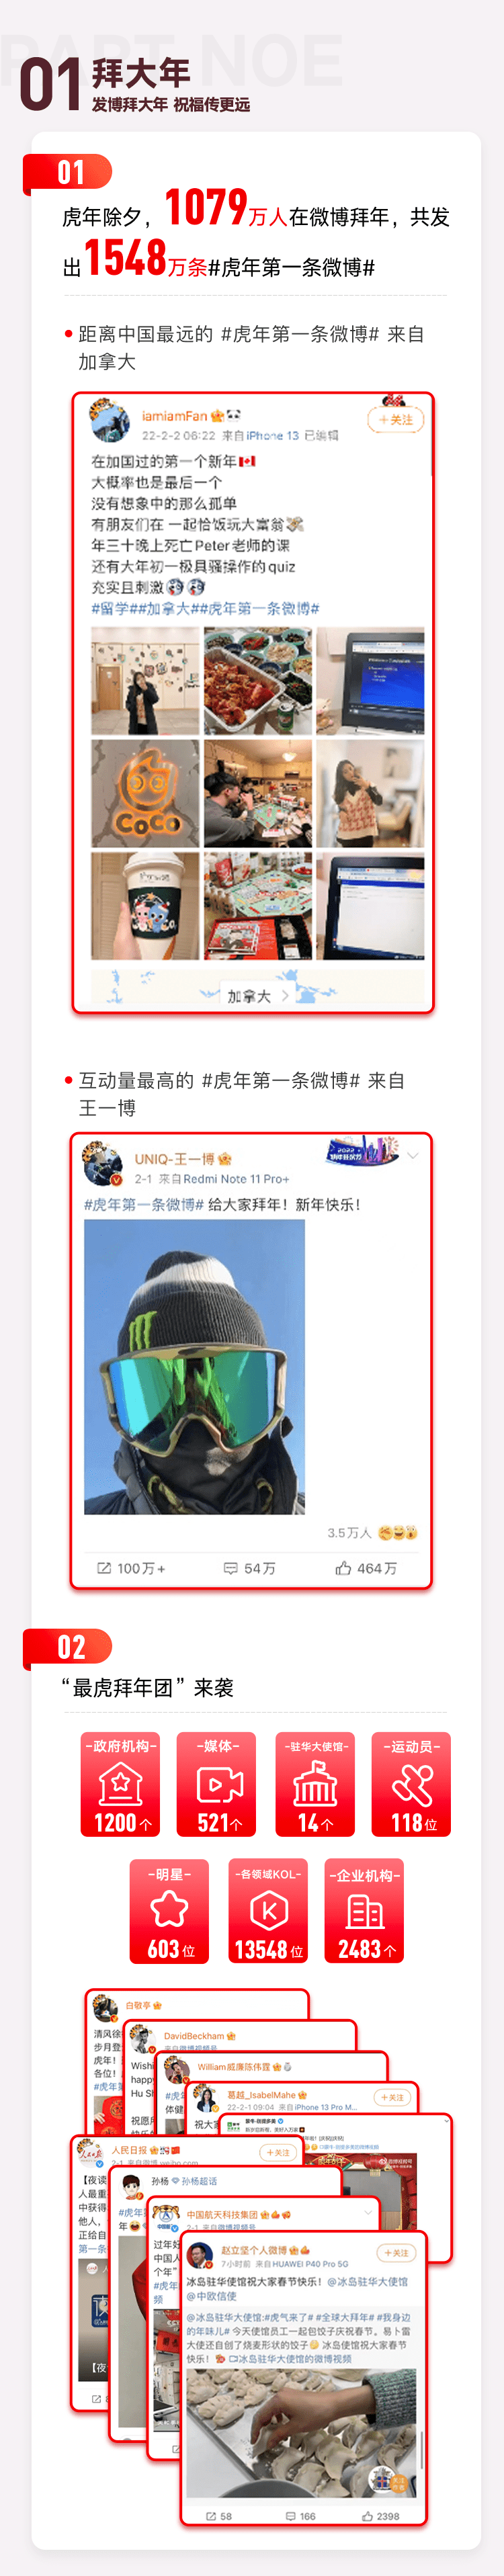 微博发布春节用户行为报告 冬奥会登顶虎年最热话题